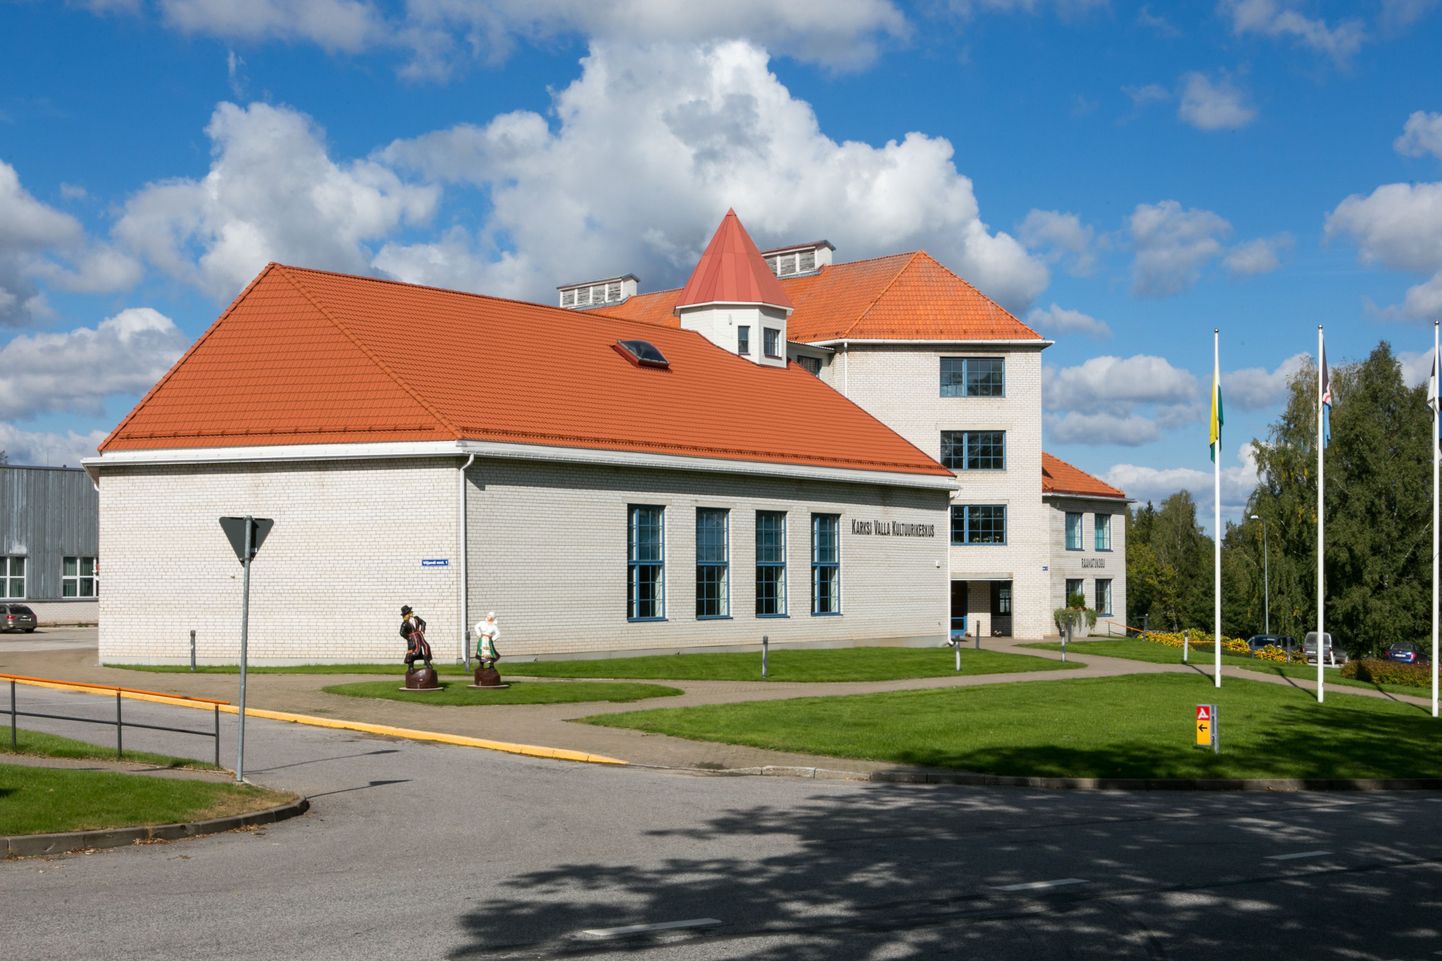 Karksi valla kultuurikeskuses on 2. novembrini üleval kolm näitust: «Karksi valla kultuuriloojad läbi aastate», «Kultuurilugu kivis» ja «Balti kett 25».